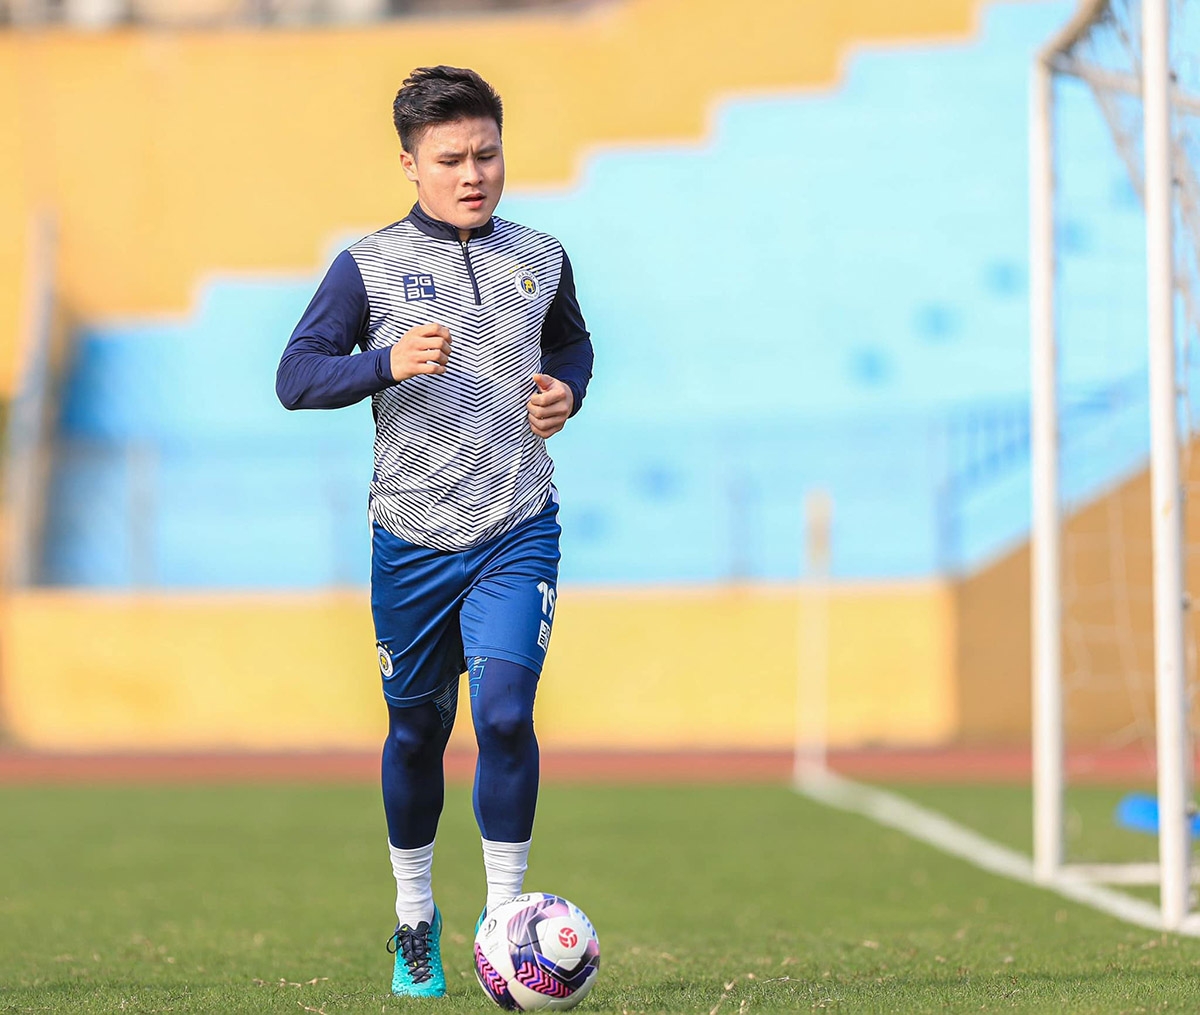 HLV Park Hang Seo lo ngại việc Quang Hải ra nước ngoài thi đấu sẽ ảnh hưởng tới tuyển Việt Nam